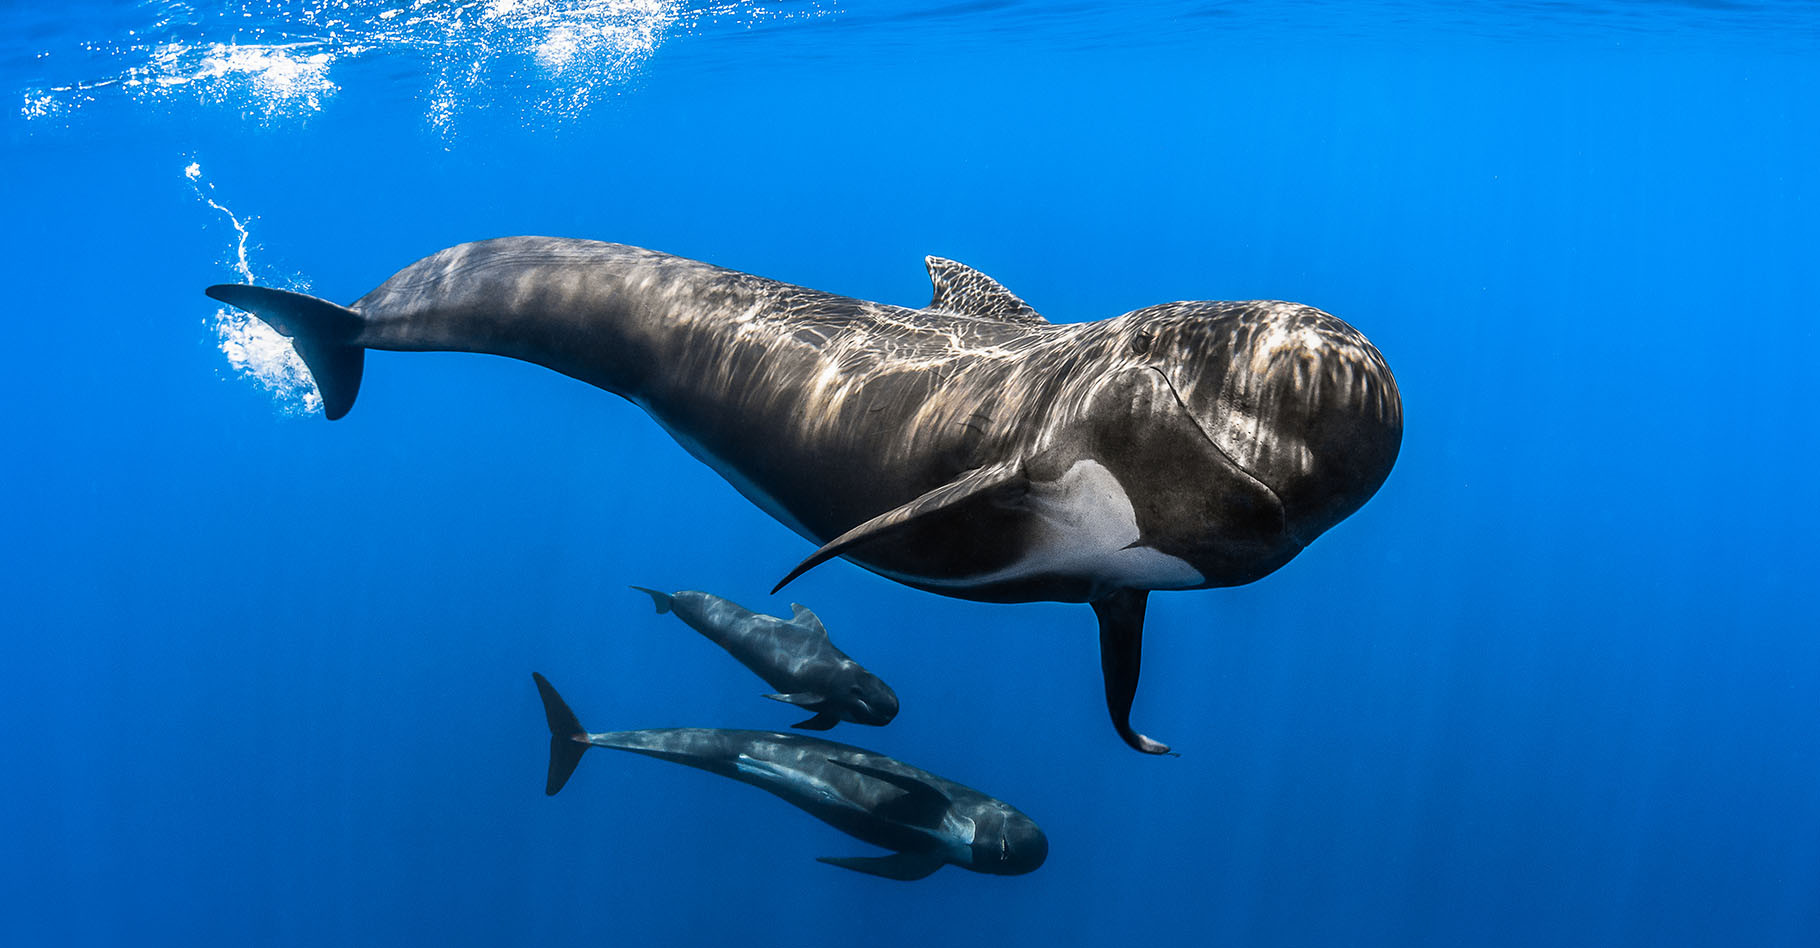 Le globicéphale (Globicephala) est un cétacé de la famille des dauphins océaniques, ici surpris dans le sanctuaire Pelagos, un sanctuaire pour mammifères marins de plus de 85.000 m2 en Méditerranée.Les globicéphales sont des animaux très sociables qui vivent en grands groupes. Ils n’hésitent pas à s’approcher et à interagir avec les bateaux qui malheureusement causent leur perte du côté des îles Féroé (Danemark). Là, ils sont massacrés pour des raisons traditionnelles appelées « Grindadrap ». C’est ainsi que les locaux nomment le rabattage et le massacre de familles entières de cétacés. Une tradition barbare soutenue officiellement par le gouvernement danois et trop souvent passée sous silence par les médias et dirigeants européens. © Greg Lecoeur, Tous droits réservés